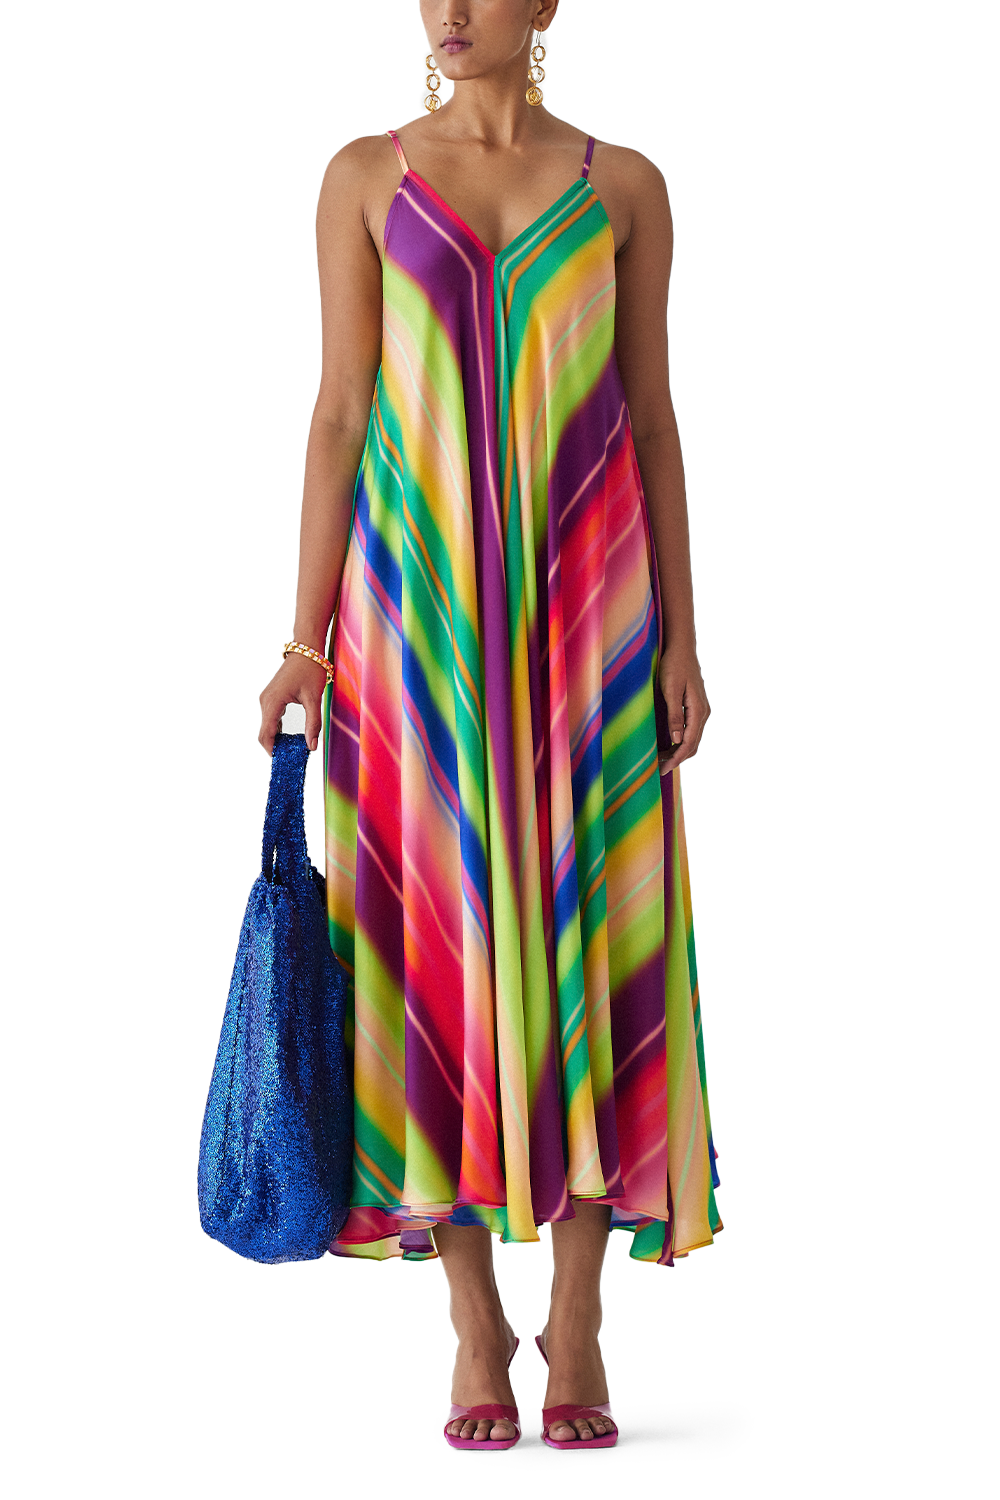 Rainbow Strappy Dress